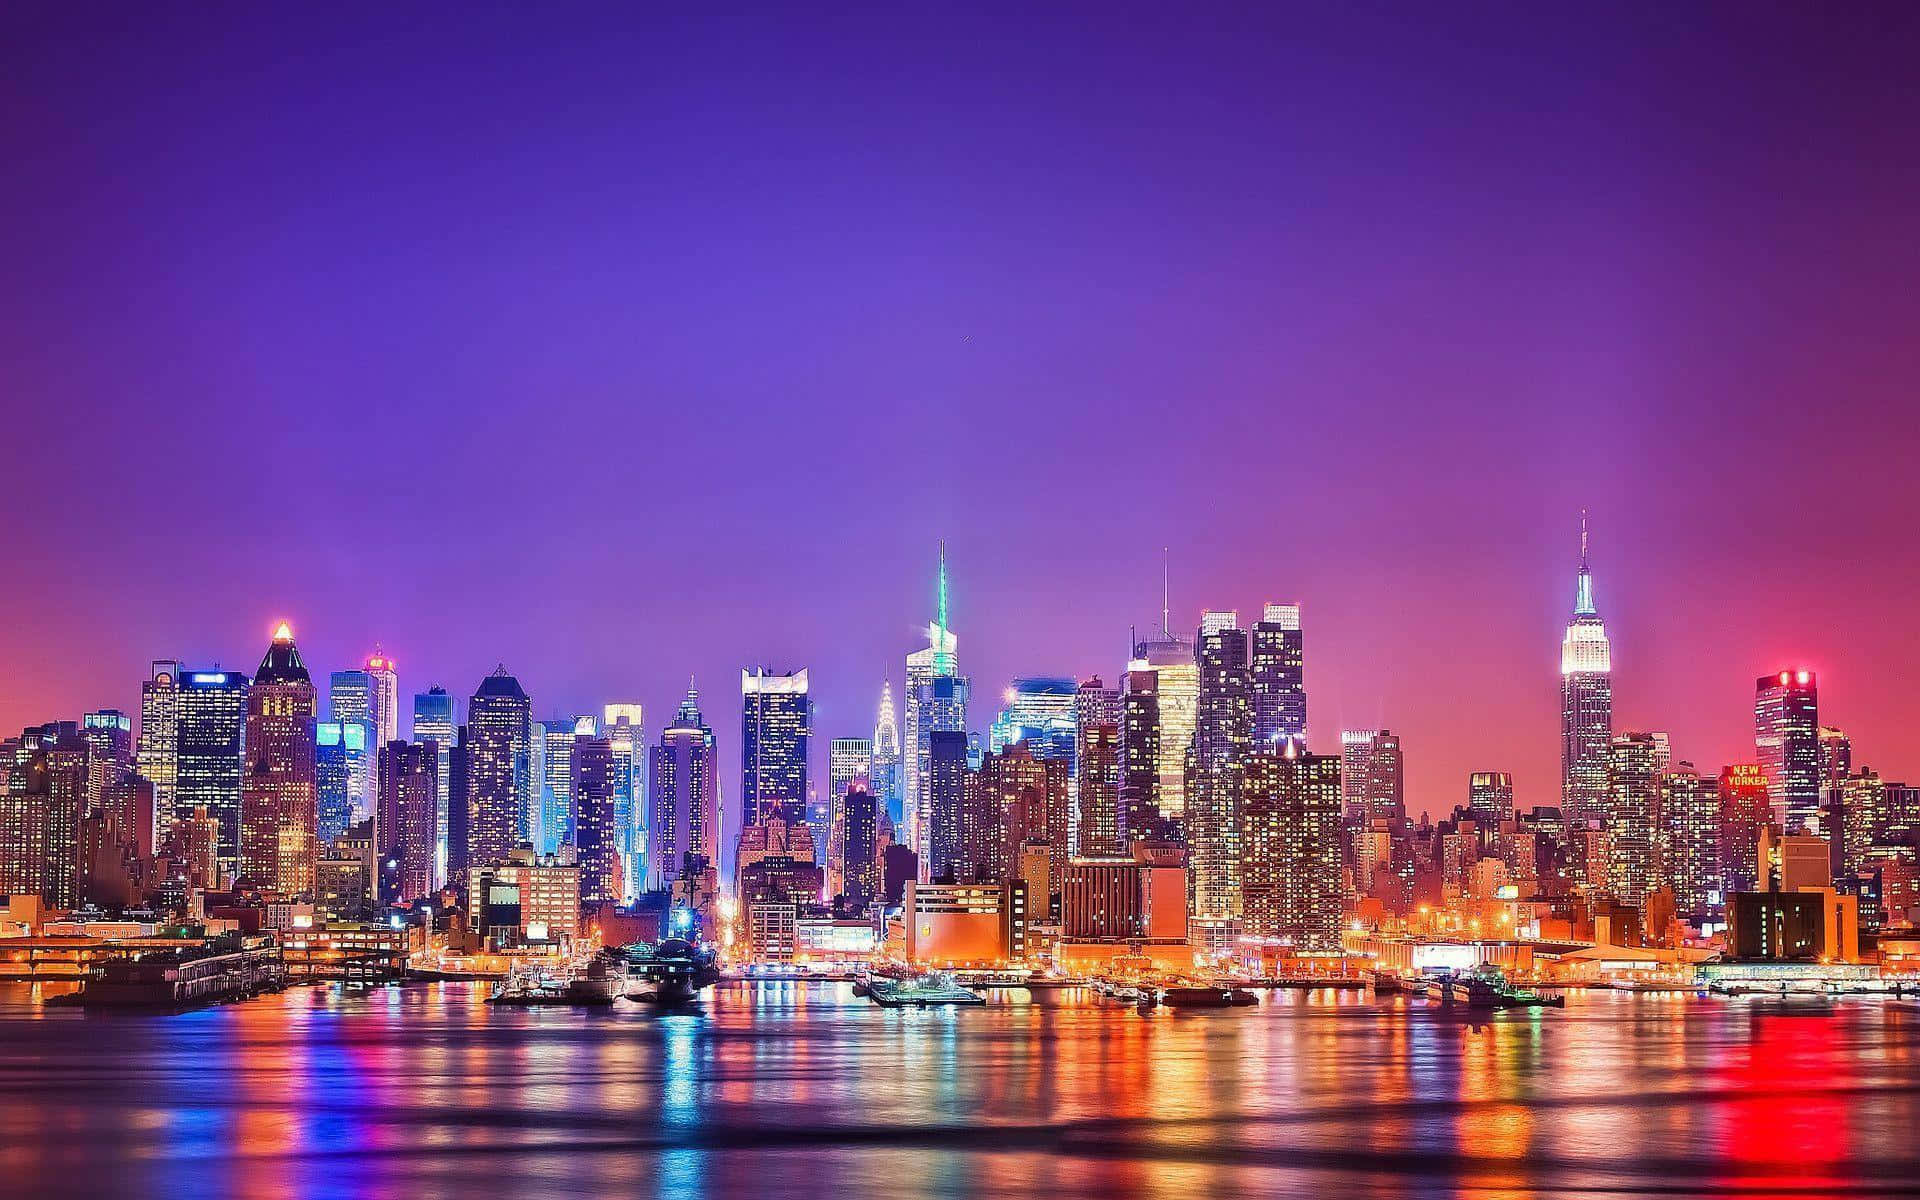 Newyork City Di Notte Con Luci Colorate.